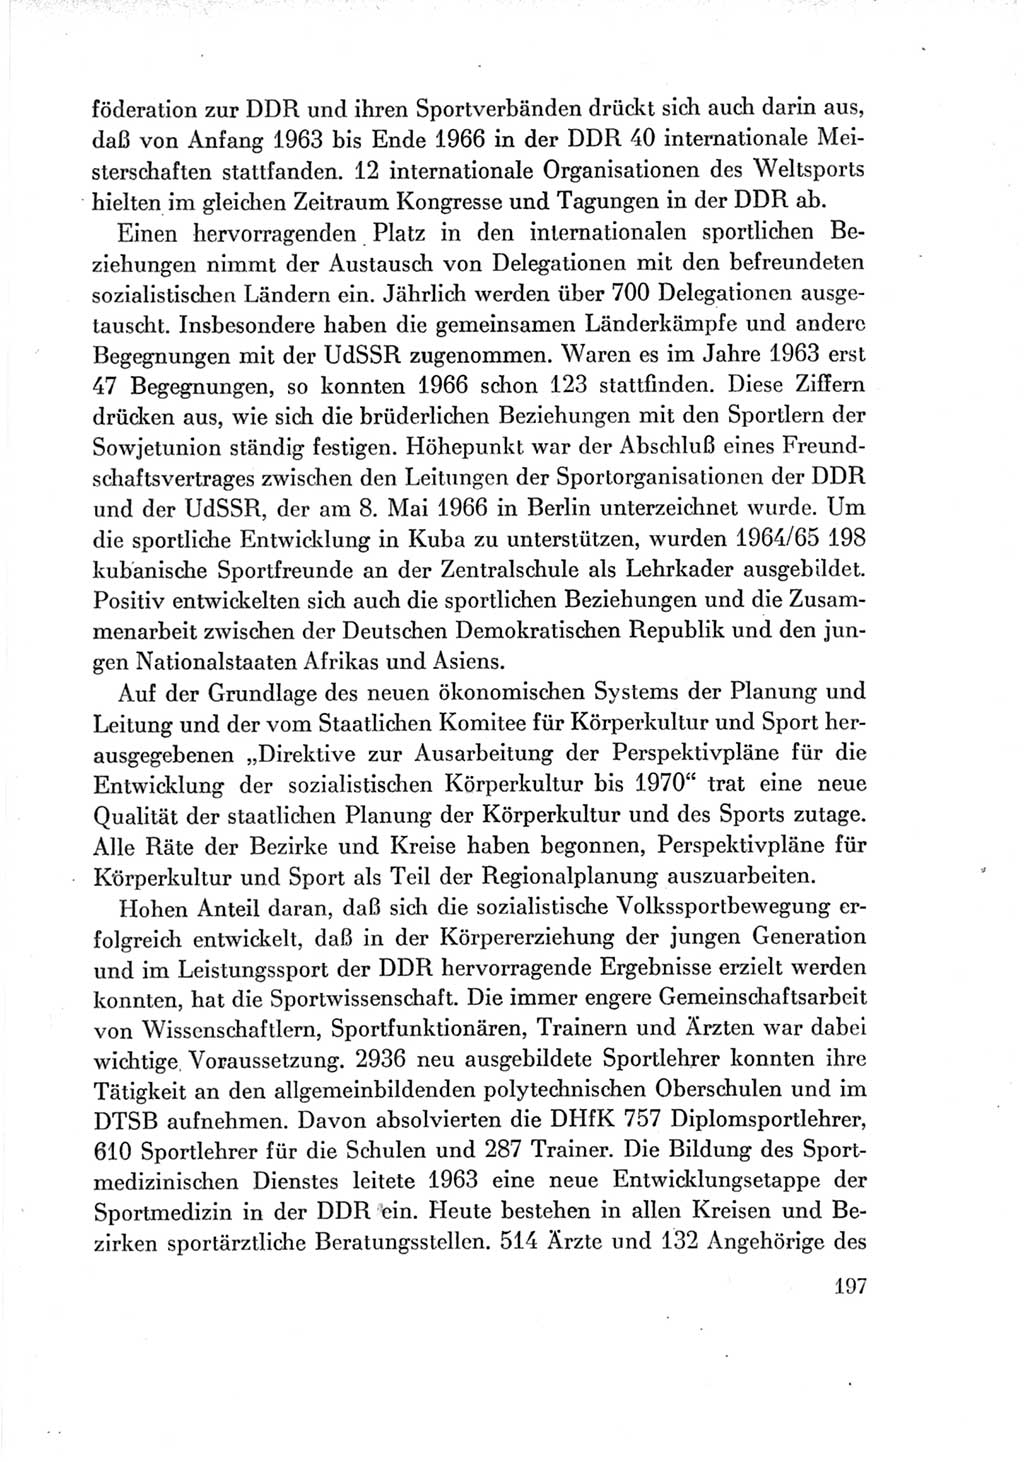 Protokoll der Verhandlungen des Ⅶ. Parteitages der Sozialistischen Einheitspartei Deutschlands (SED) [Deutsche Demokratische Republik (DDR)] 1967, Band Ⅳ, Seite 197 (Prot. Verh. Ⅶ. PT SED DDR 1967, Bd. Ⅳ, S. 197)